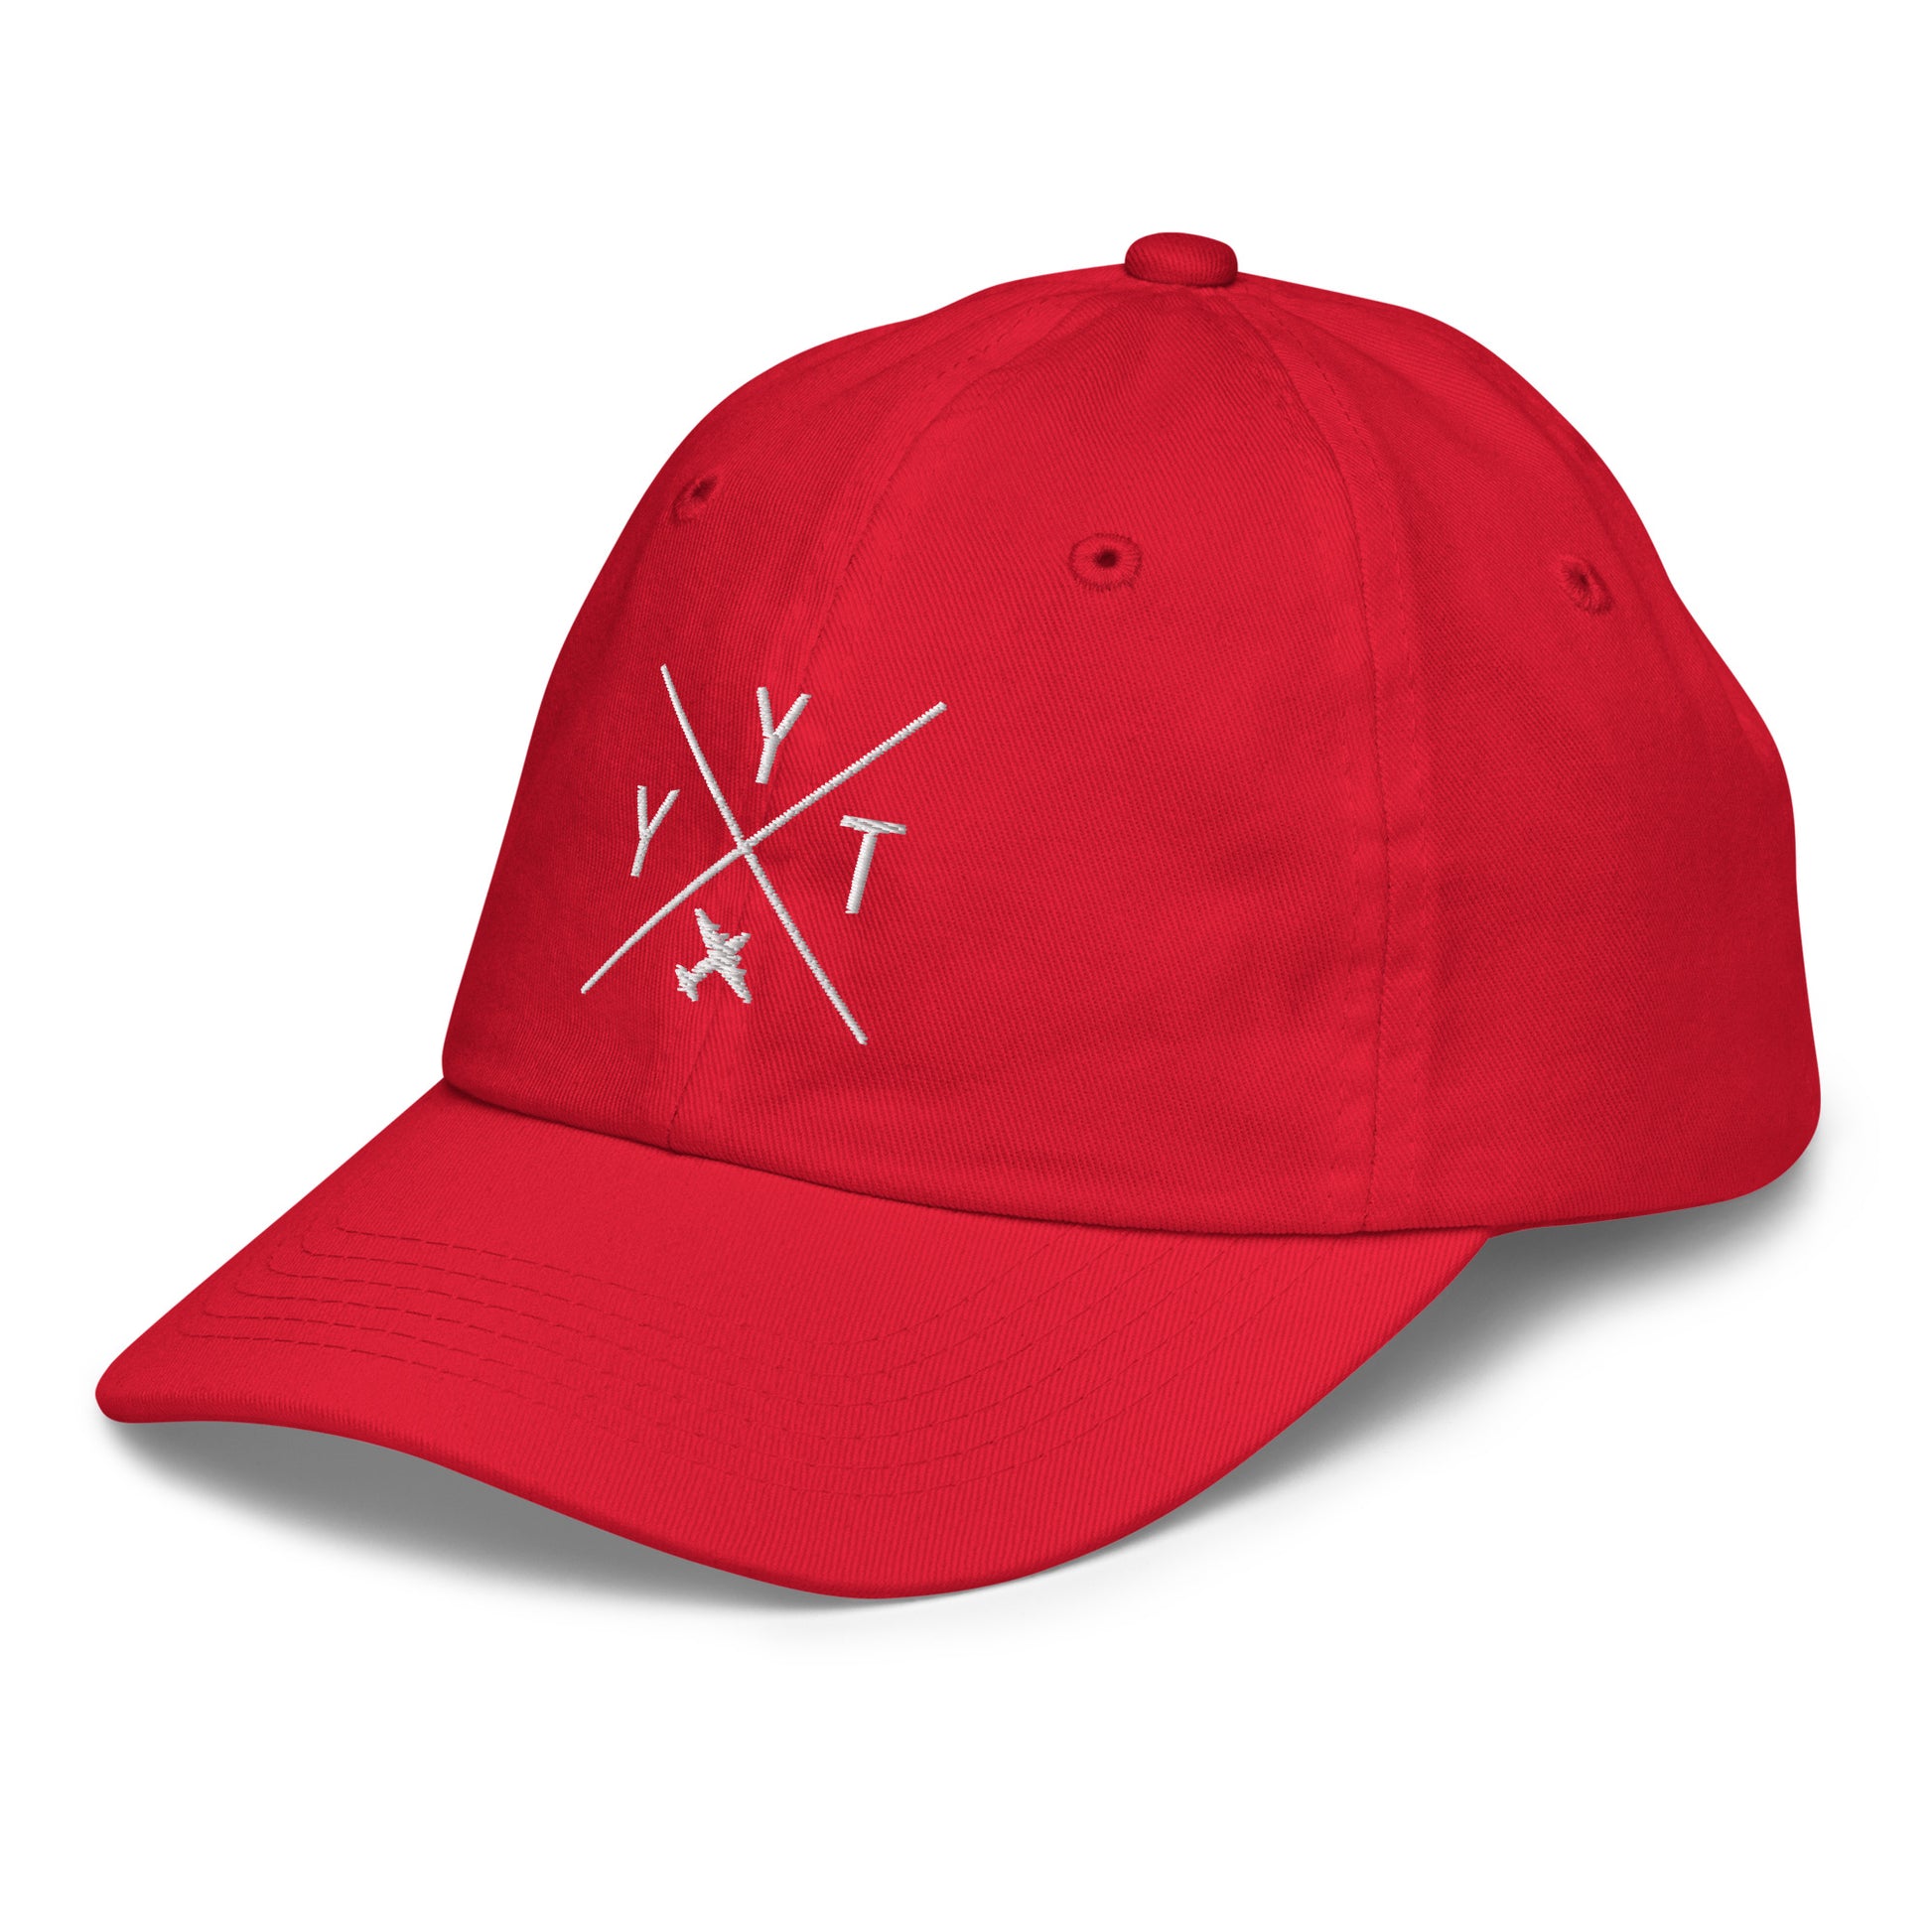 Crossed-X Kid's Baseball Cap - White • YYT St. John's • YHM Designs - Image 01